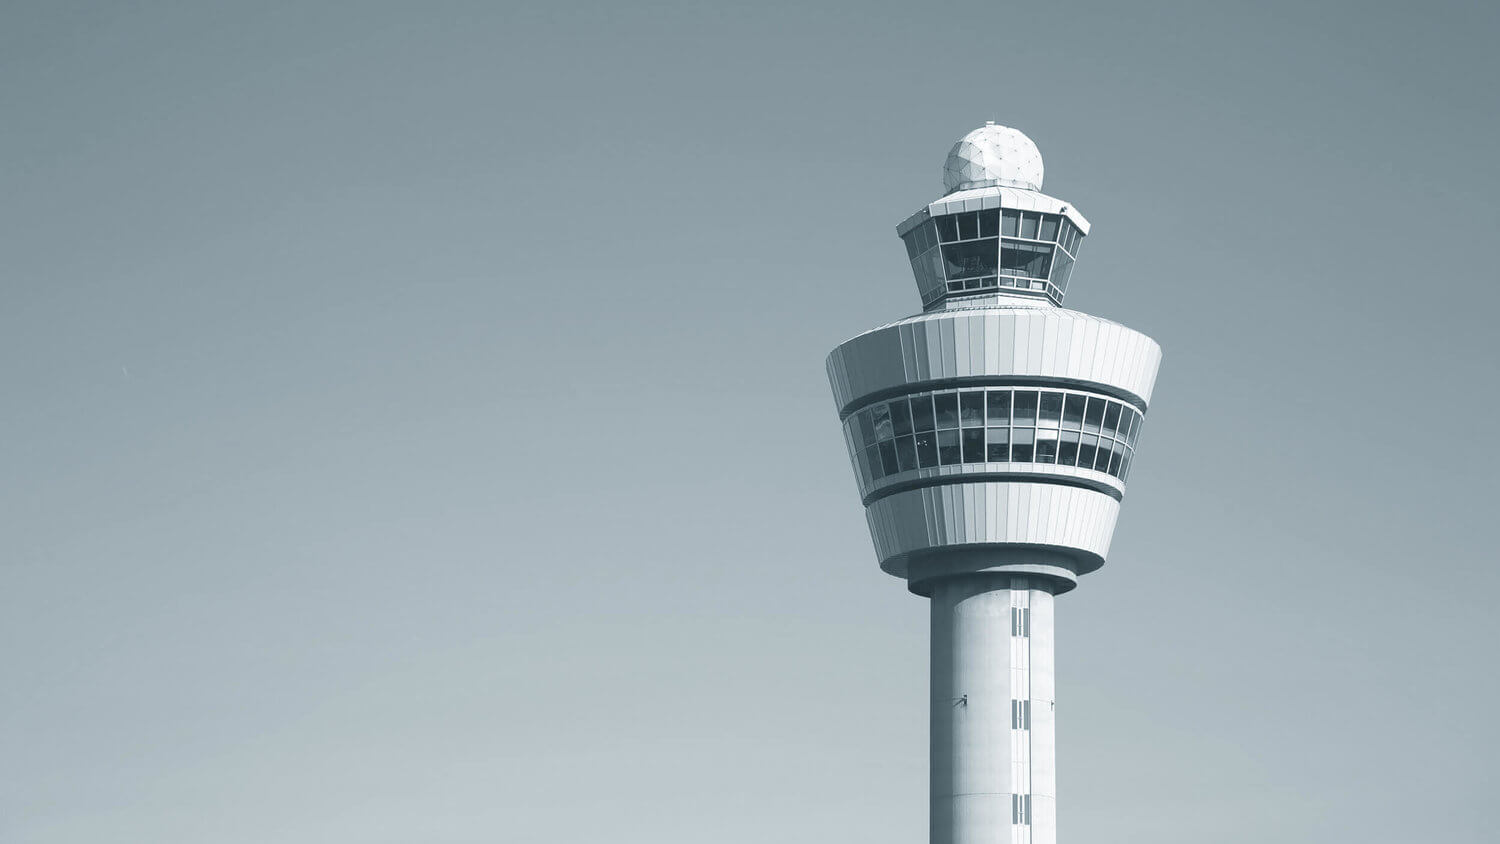  Vår vision är att bli ledande inom flygtrafikledning i Europa 